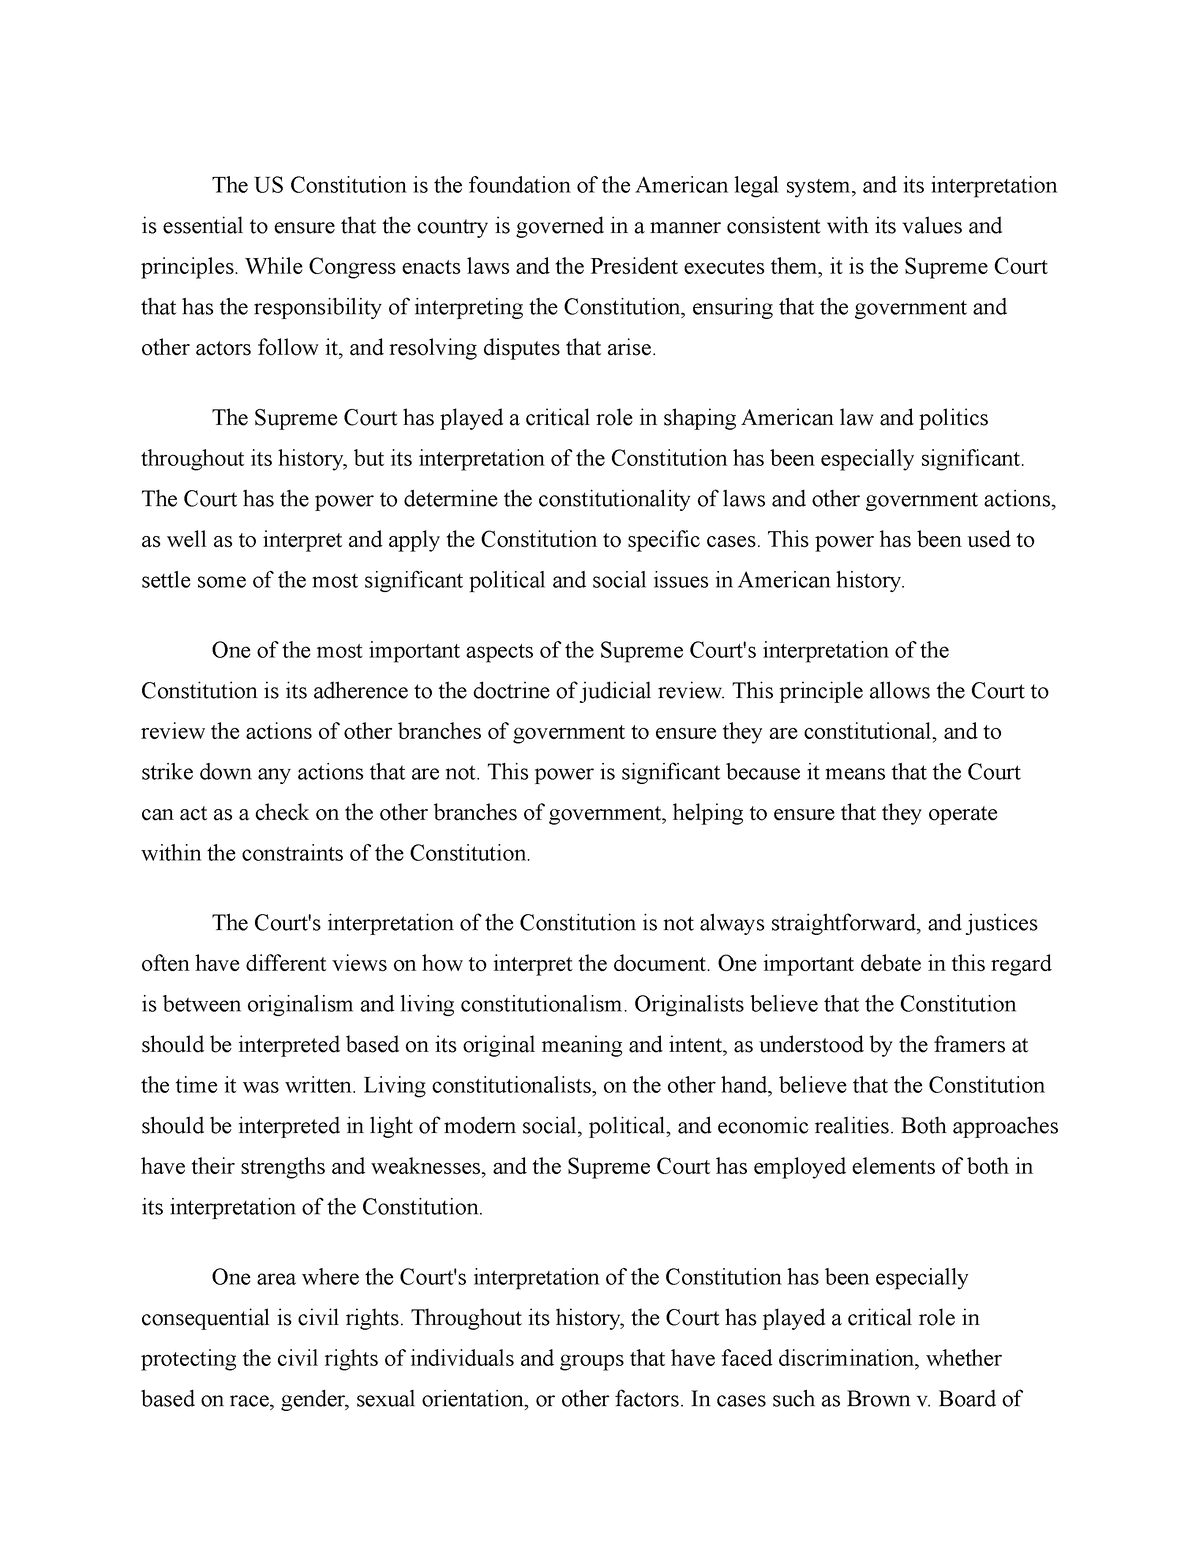 the u.s. constitution essay